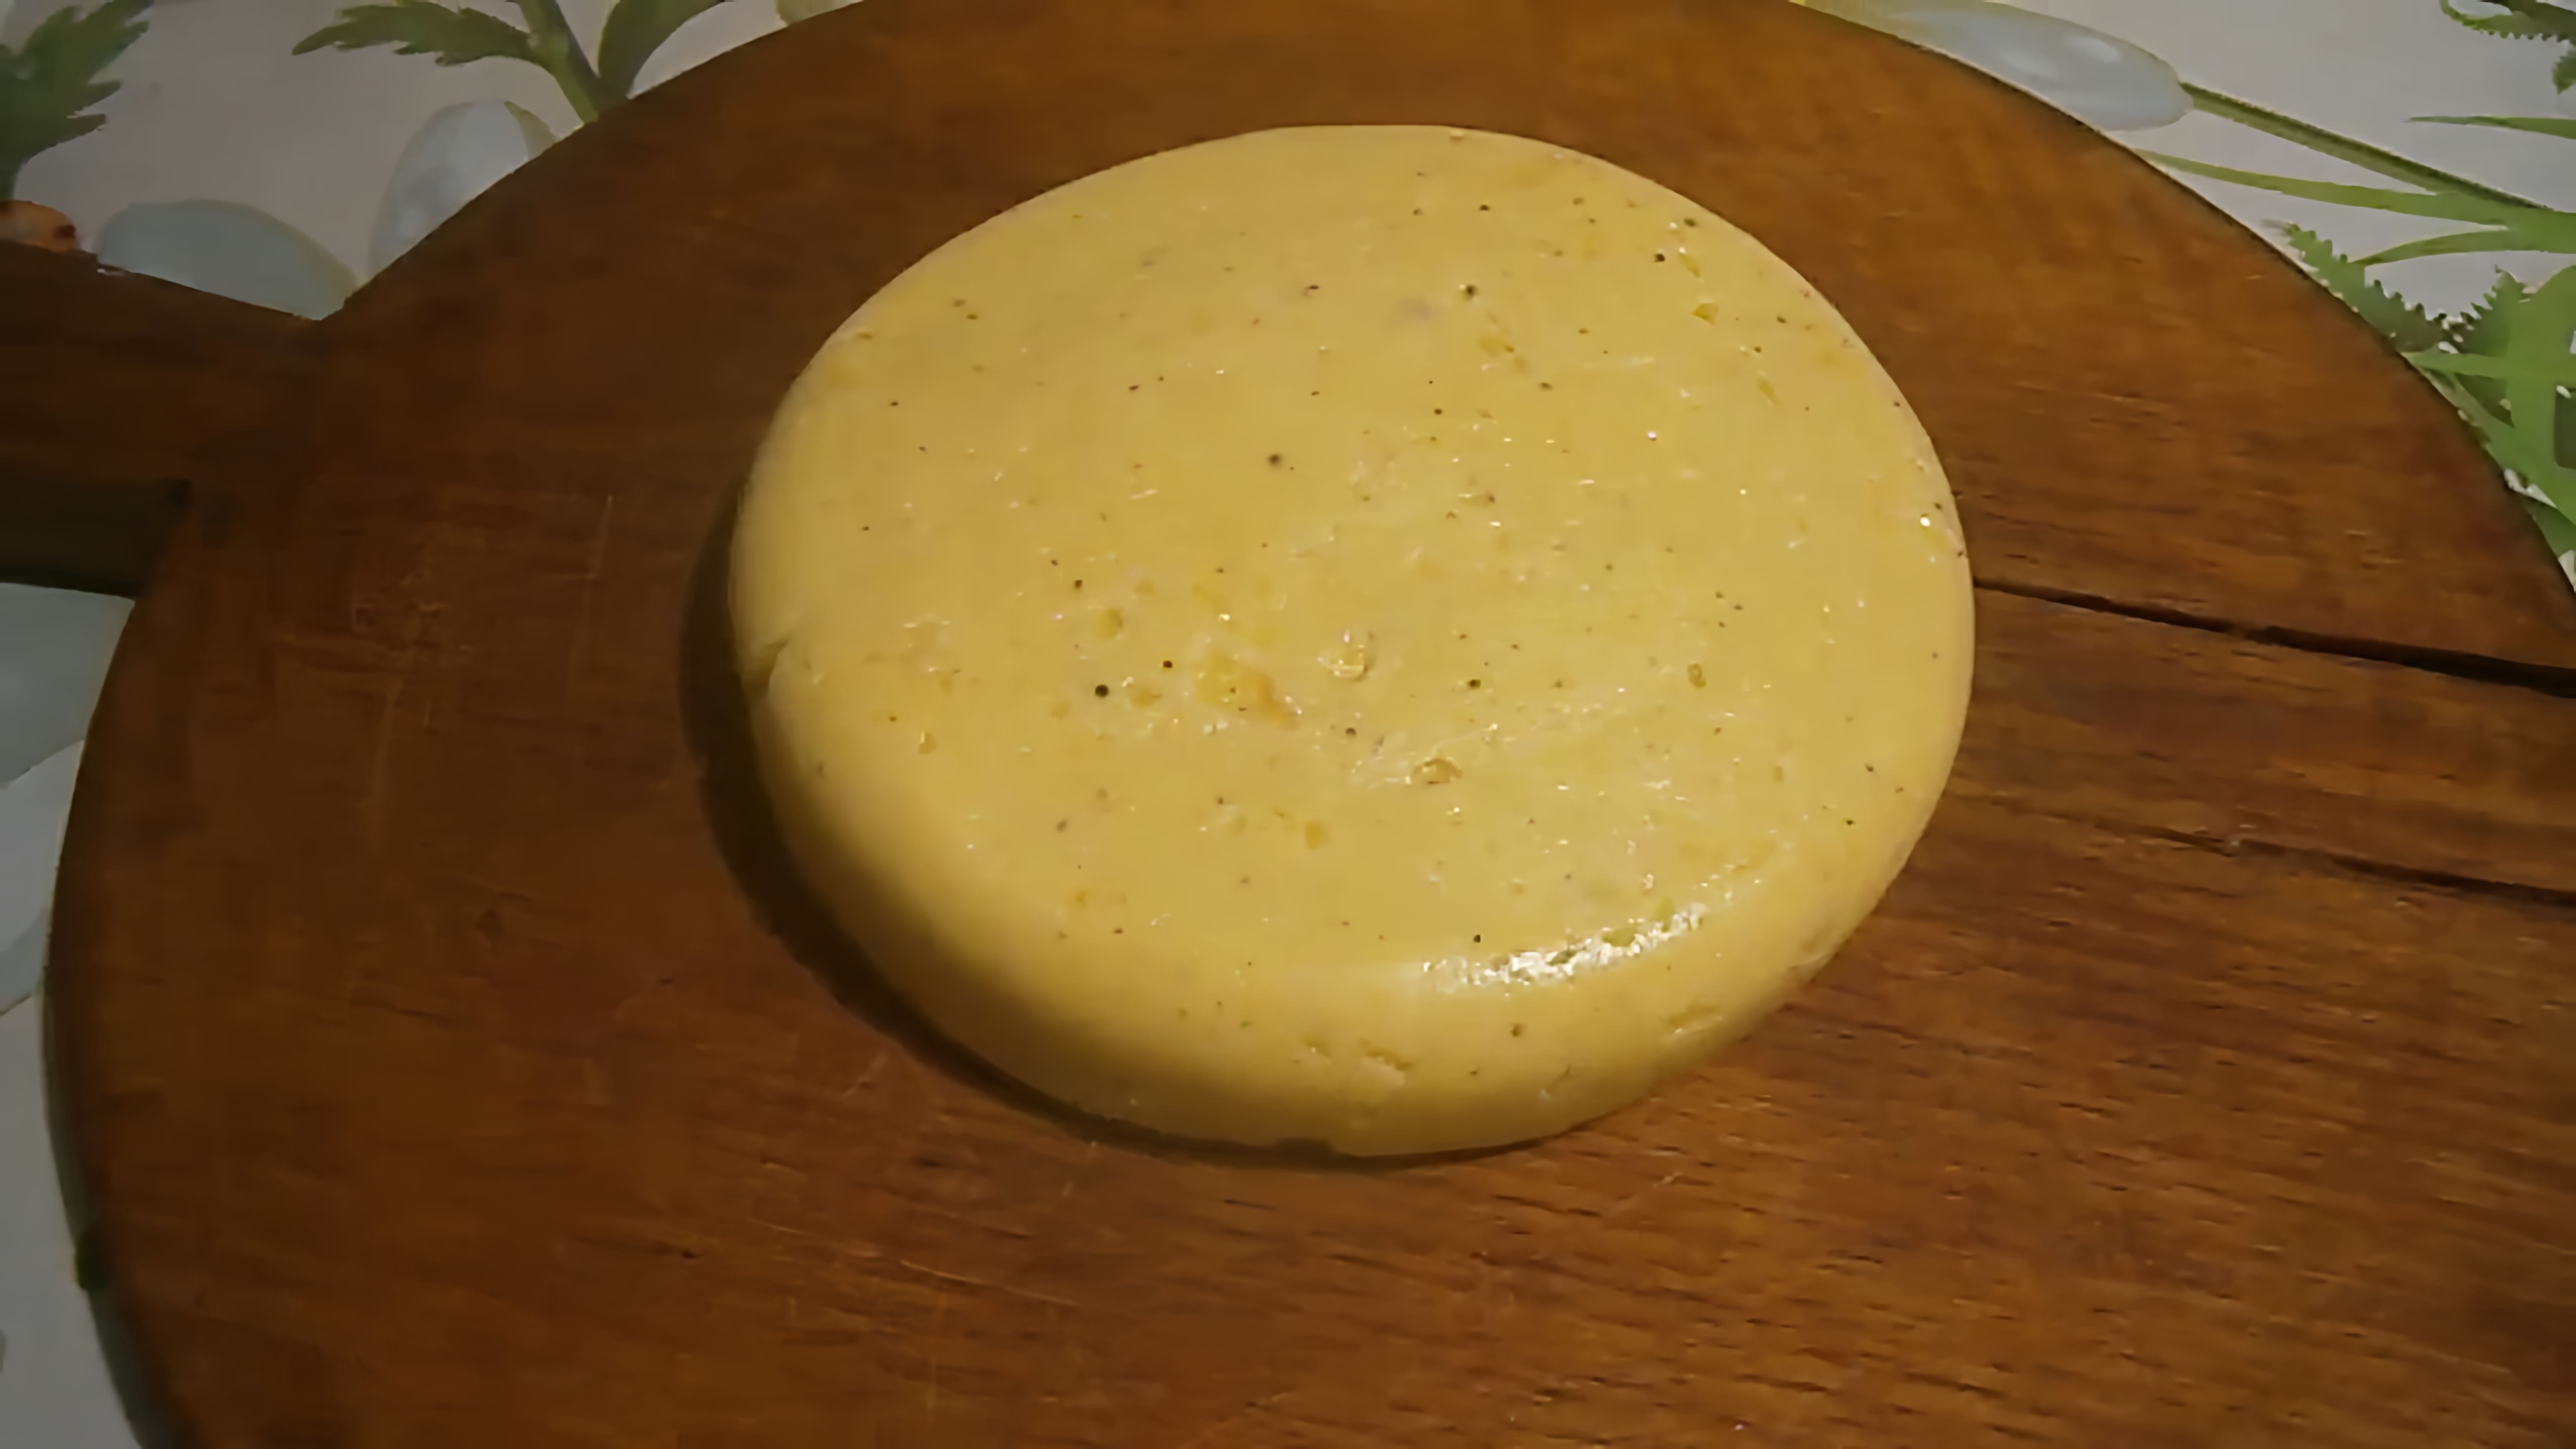 В данном видео демонстрируется процесс приготовления плавленого сыра из козьего молока